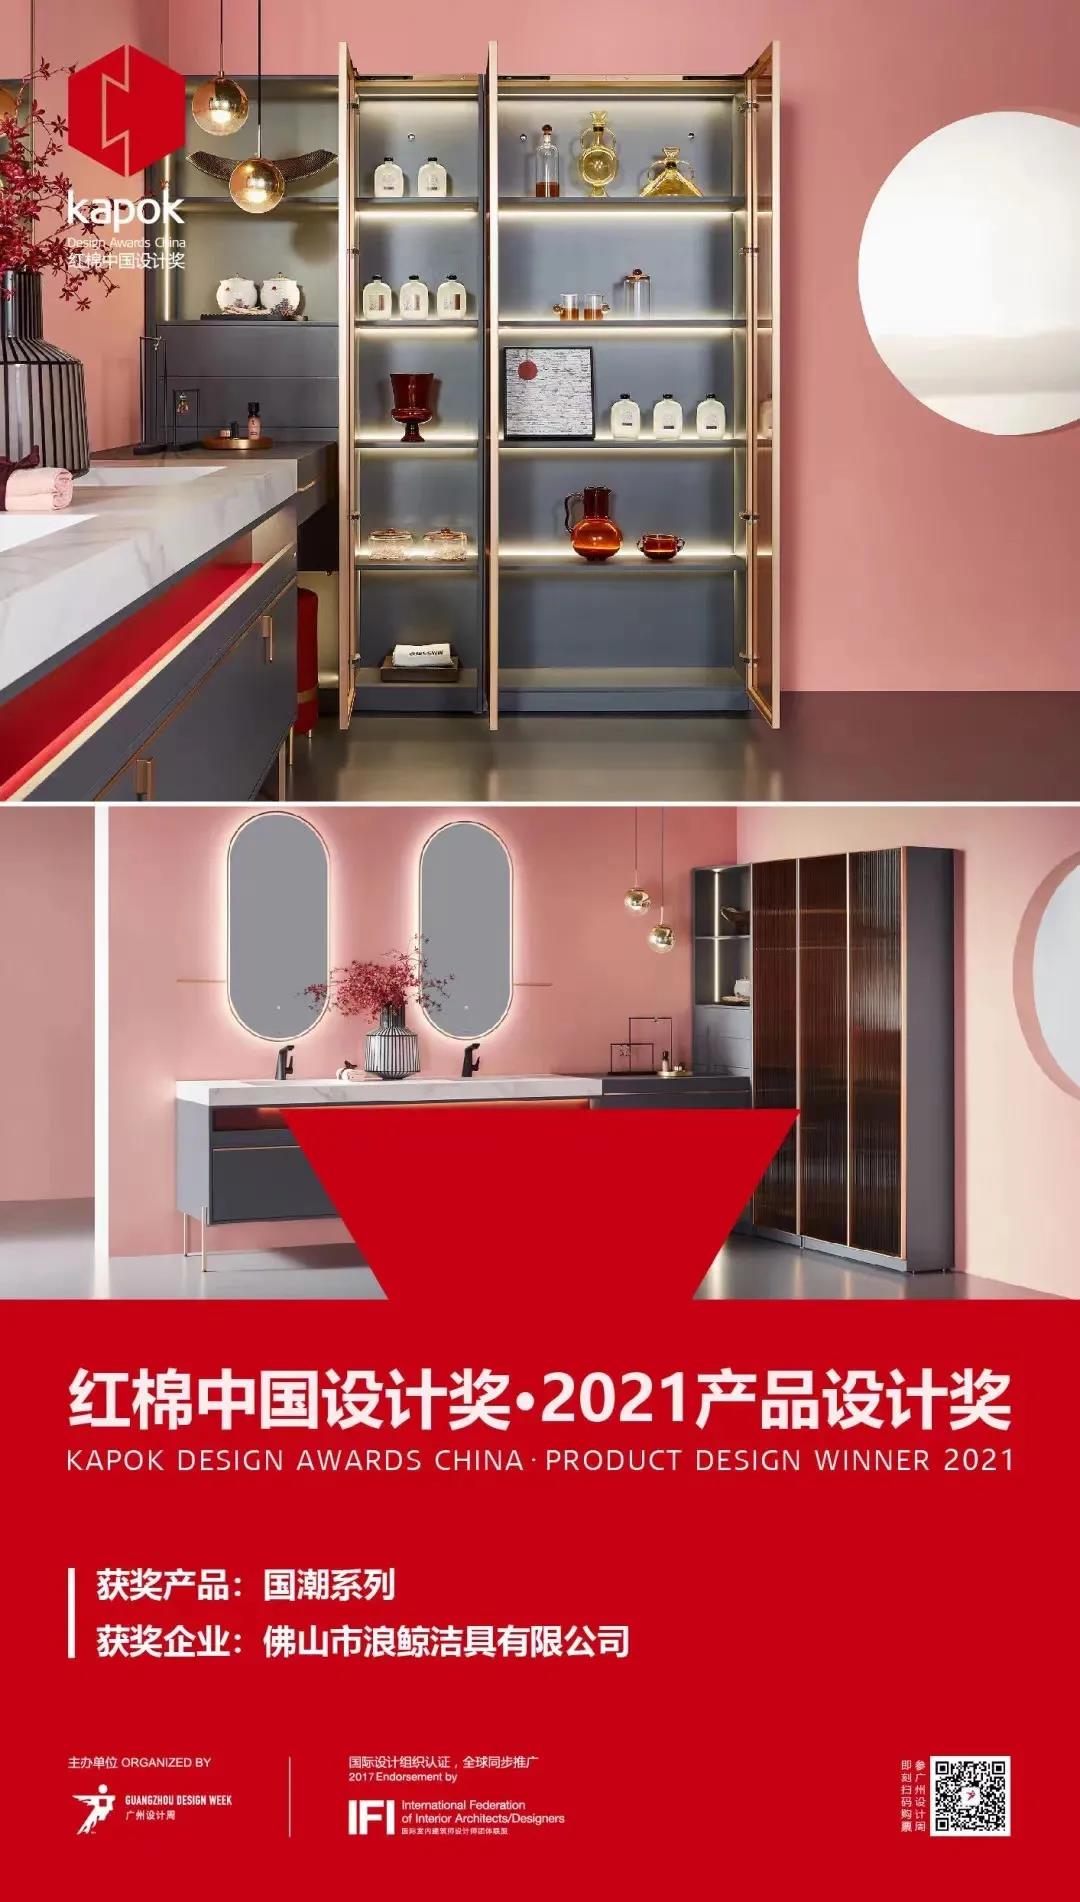 浪鲸卫浴「国潮系列」荣获红棉中国设计奖·2021产品设计奖